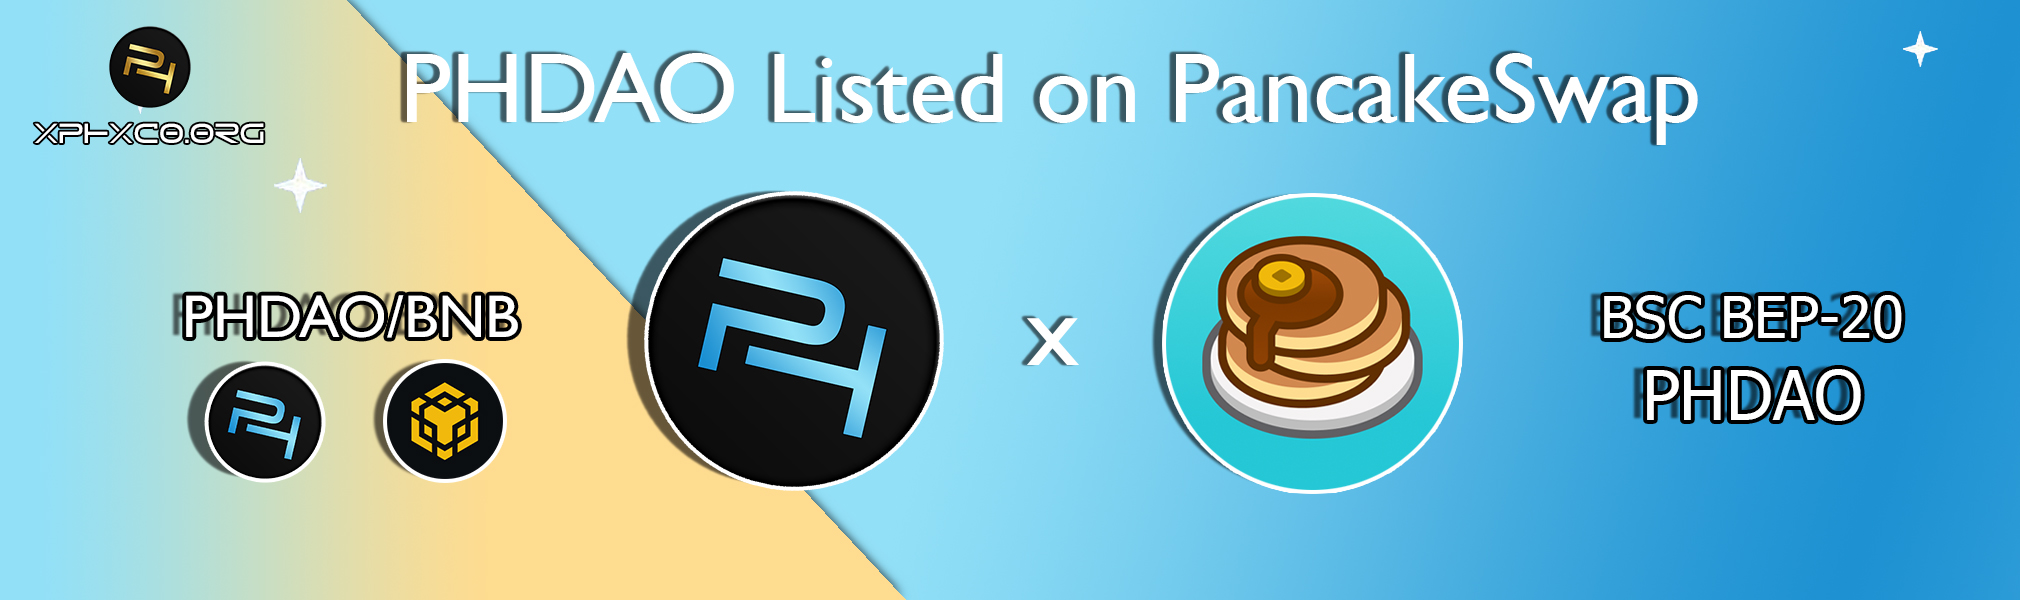 PHDAO listed on PancakeSwap